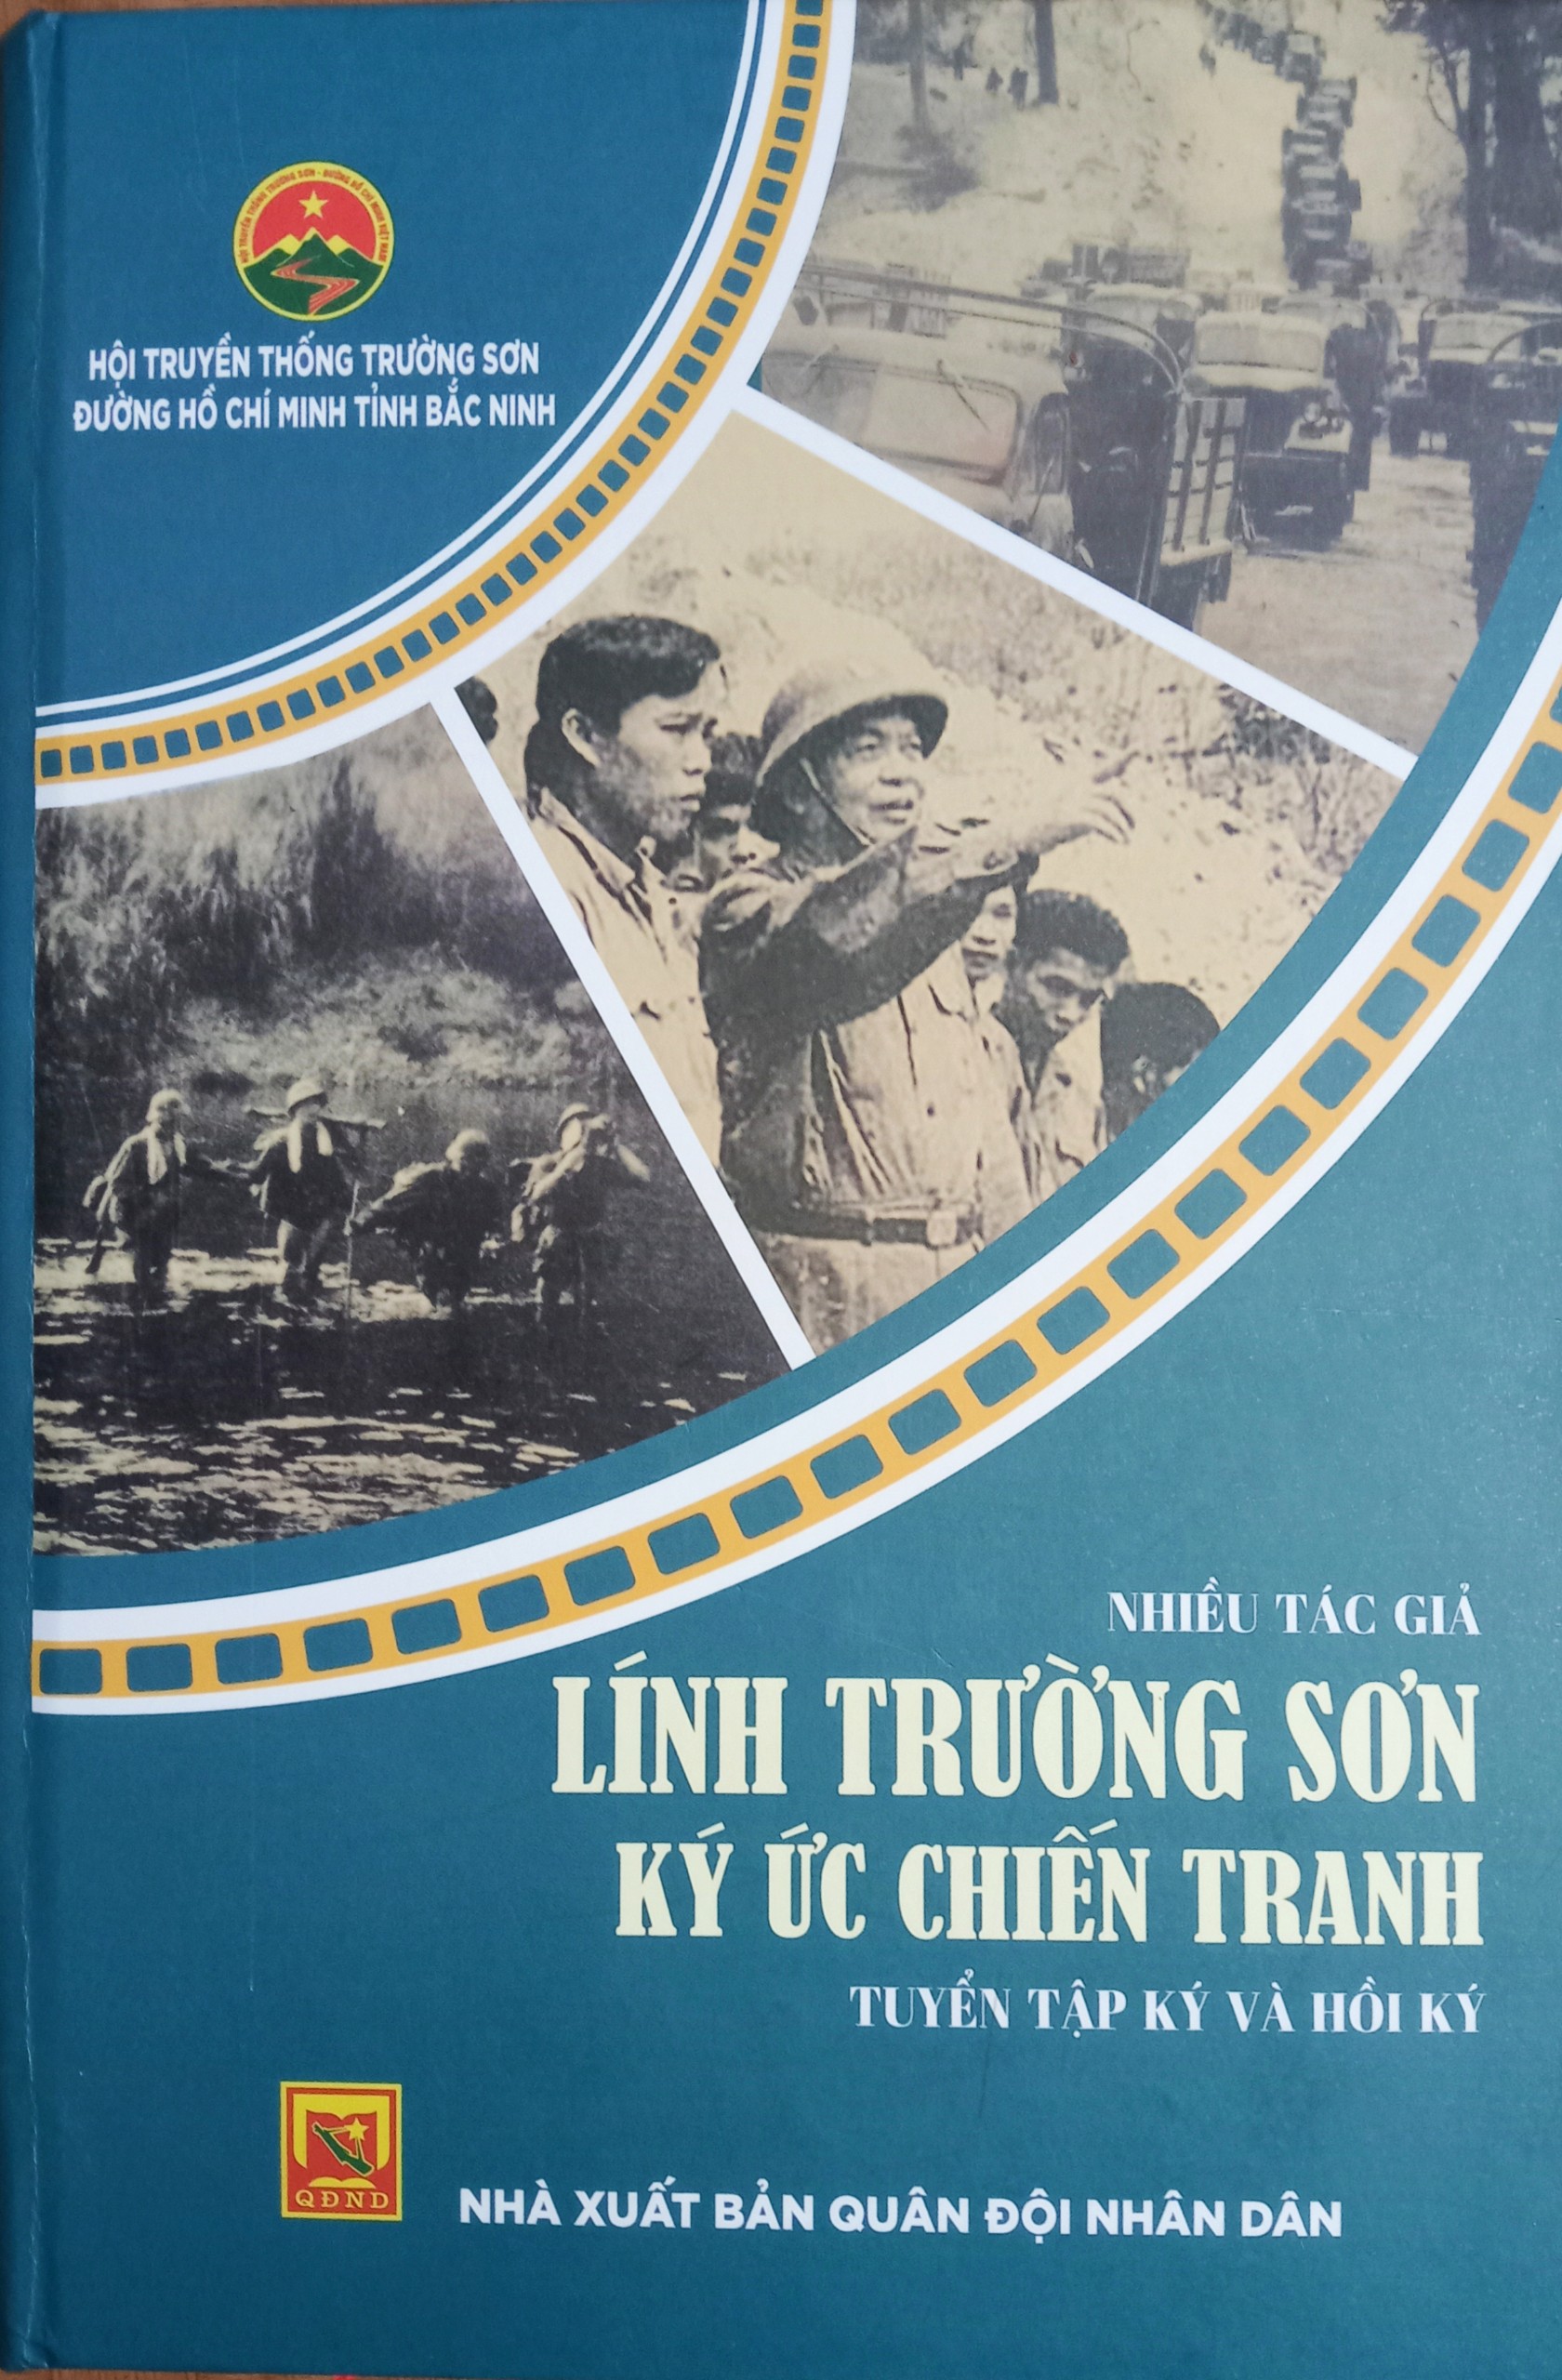 Hội TS Bắc Ninh Giới thiệu và phát hành cuốn sách "LÍNH TRƯỜNG SƠN KÍ ỨC CHIẾN TRANH"